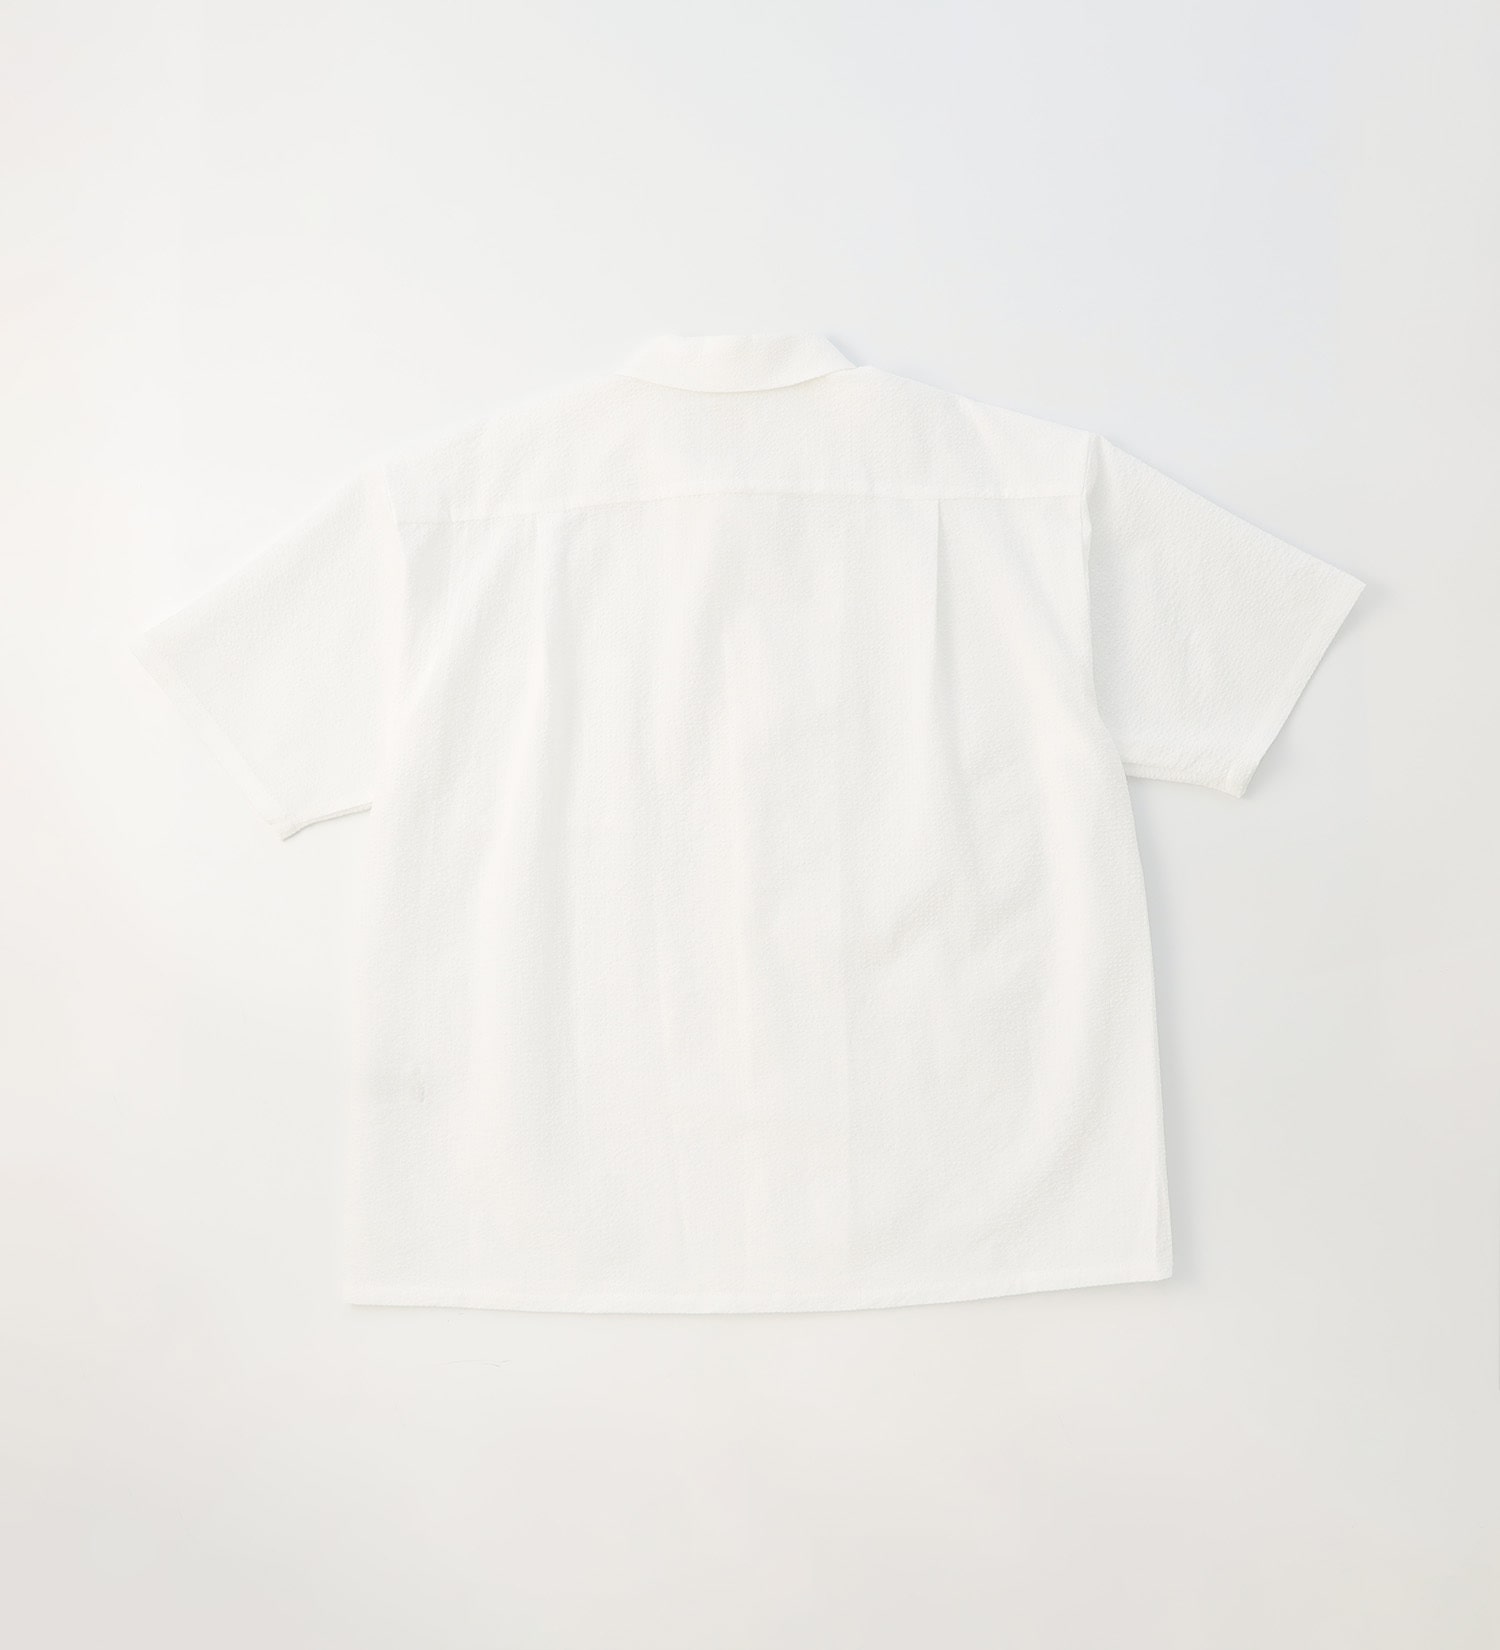 EDWIN(エドウイン)の【BLACKFRIDAY】オープンカラーシャツ 半袖（シアサッカー）【アウトレット店舗・WEB限定】|トップス/シャツ/ブラウス/メンズ|ホワイト